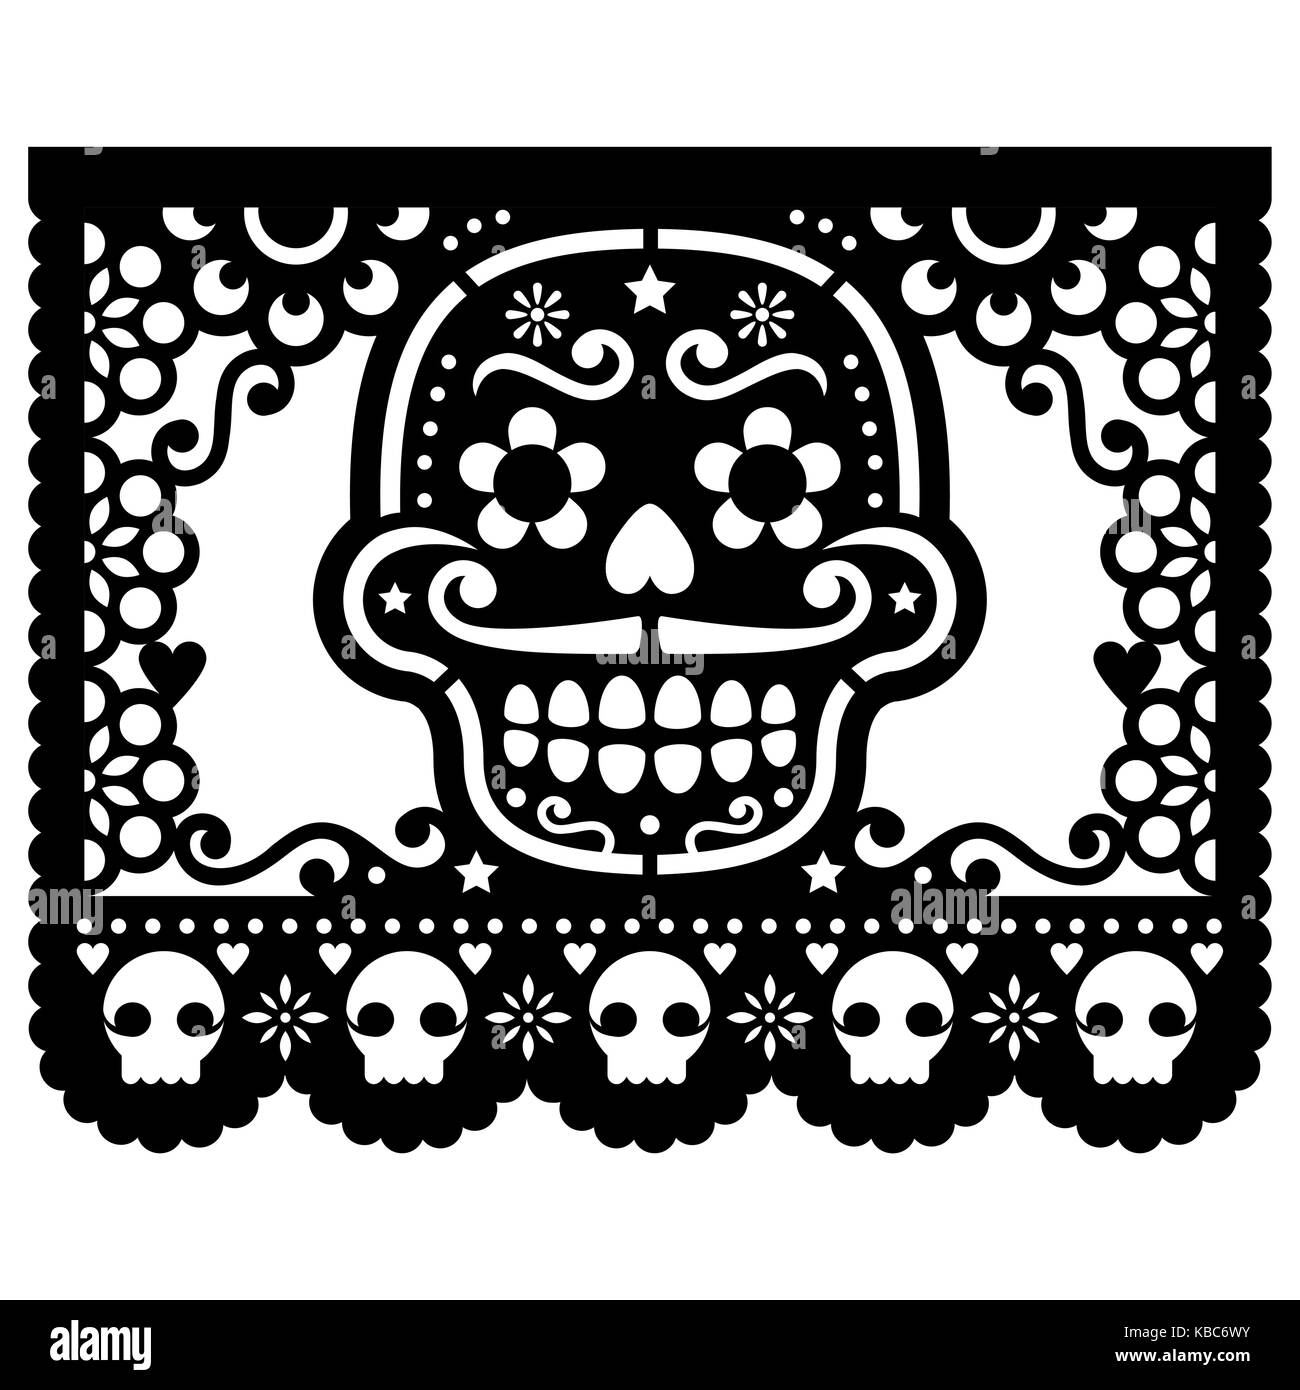 Crâne en sucre mexicain décorations papier vecteur - papel picado black design pour l'halloween, dia de los muertos, le Jour des morts Illustration de Vecteur